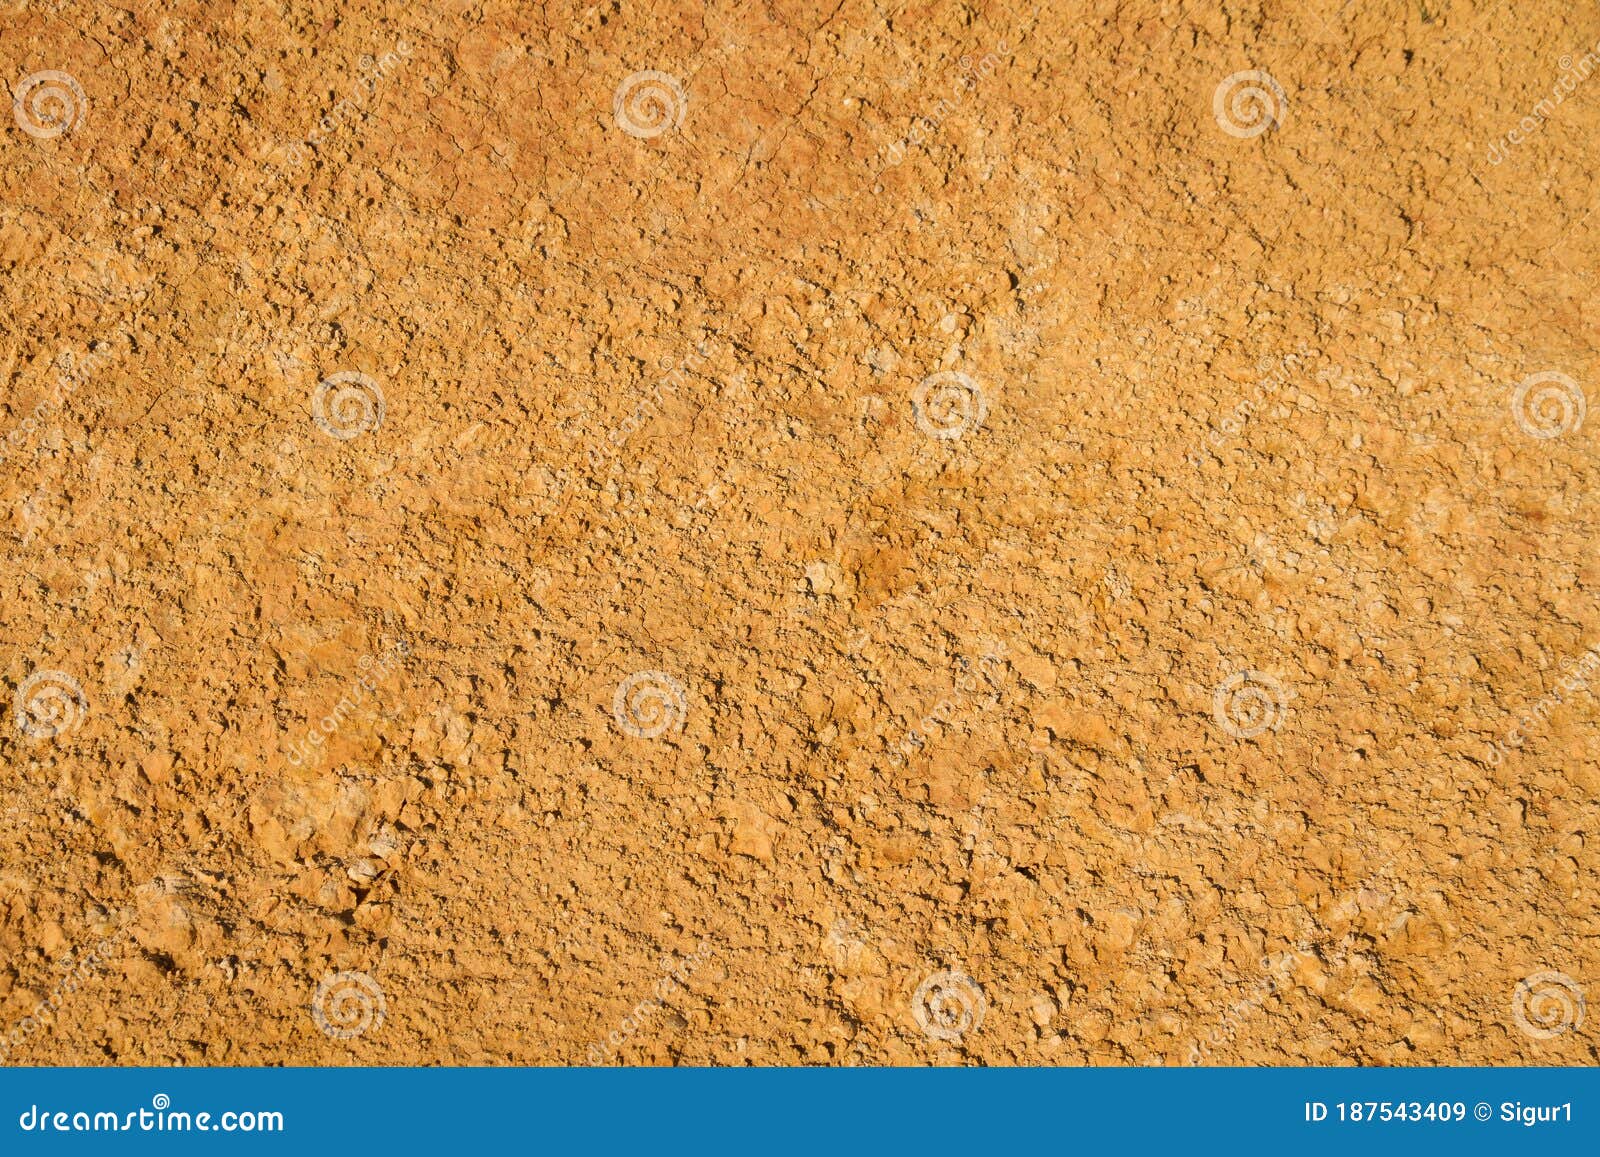 clay soil texture